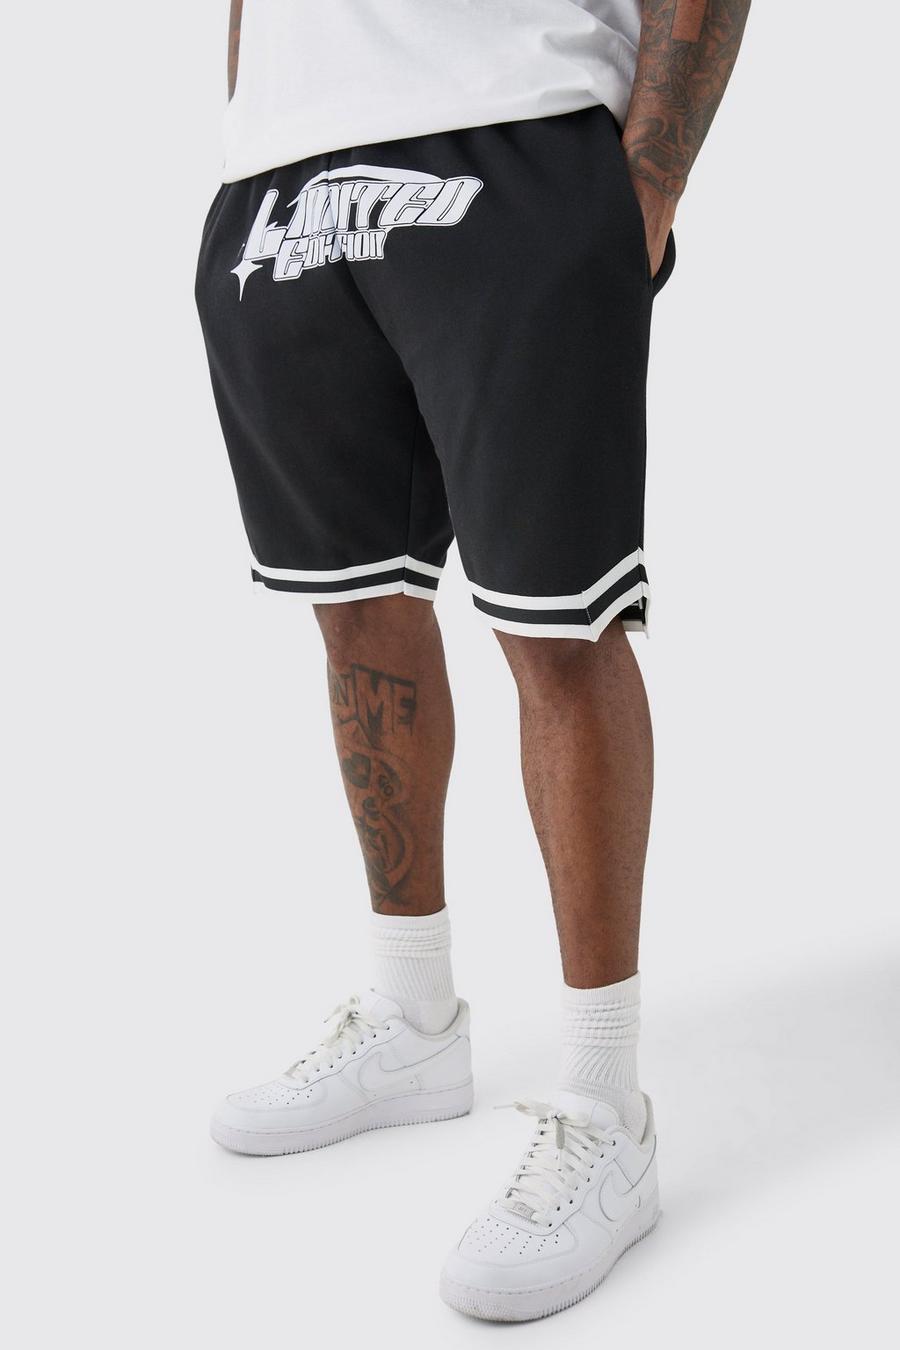 Grande taille - Short de basket large - Limited Edition, Black